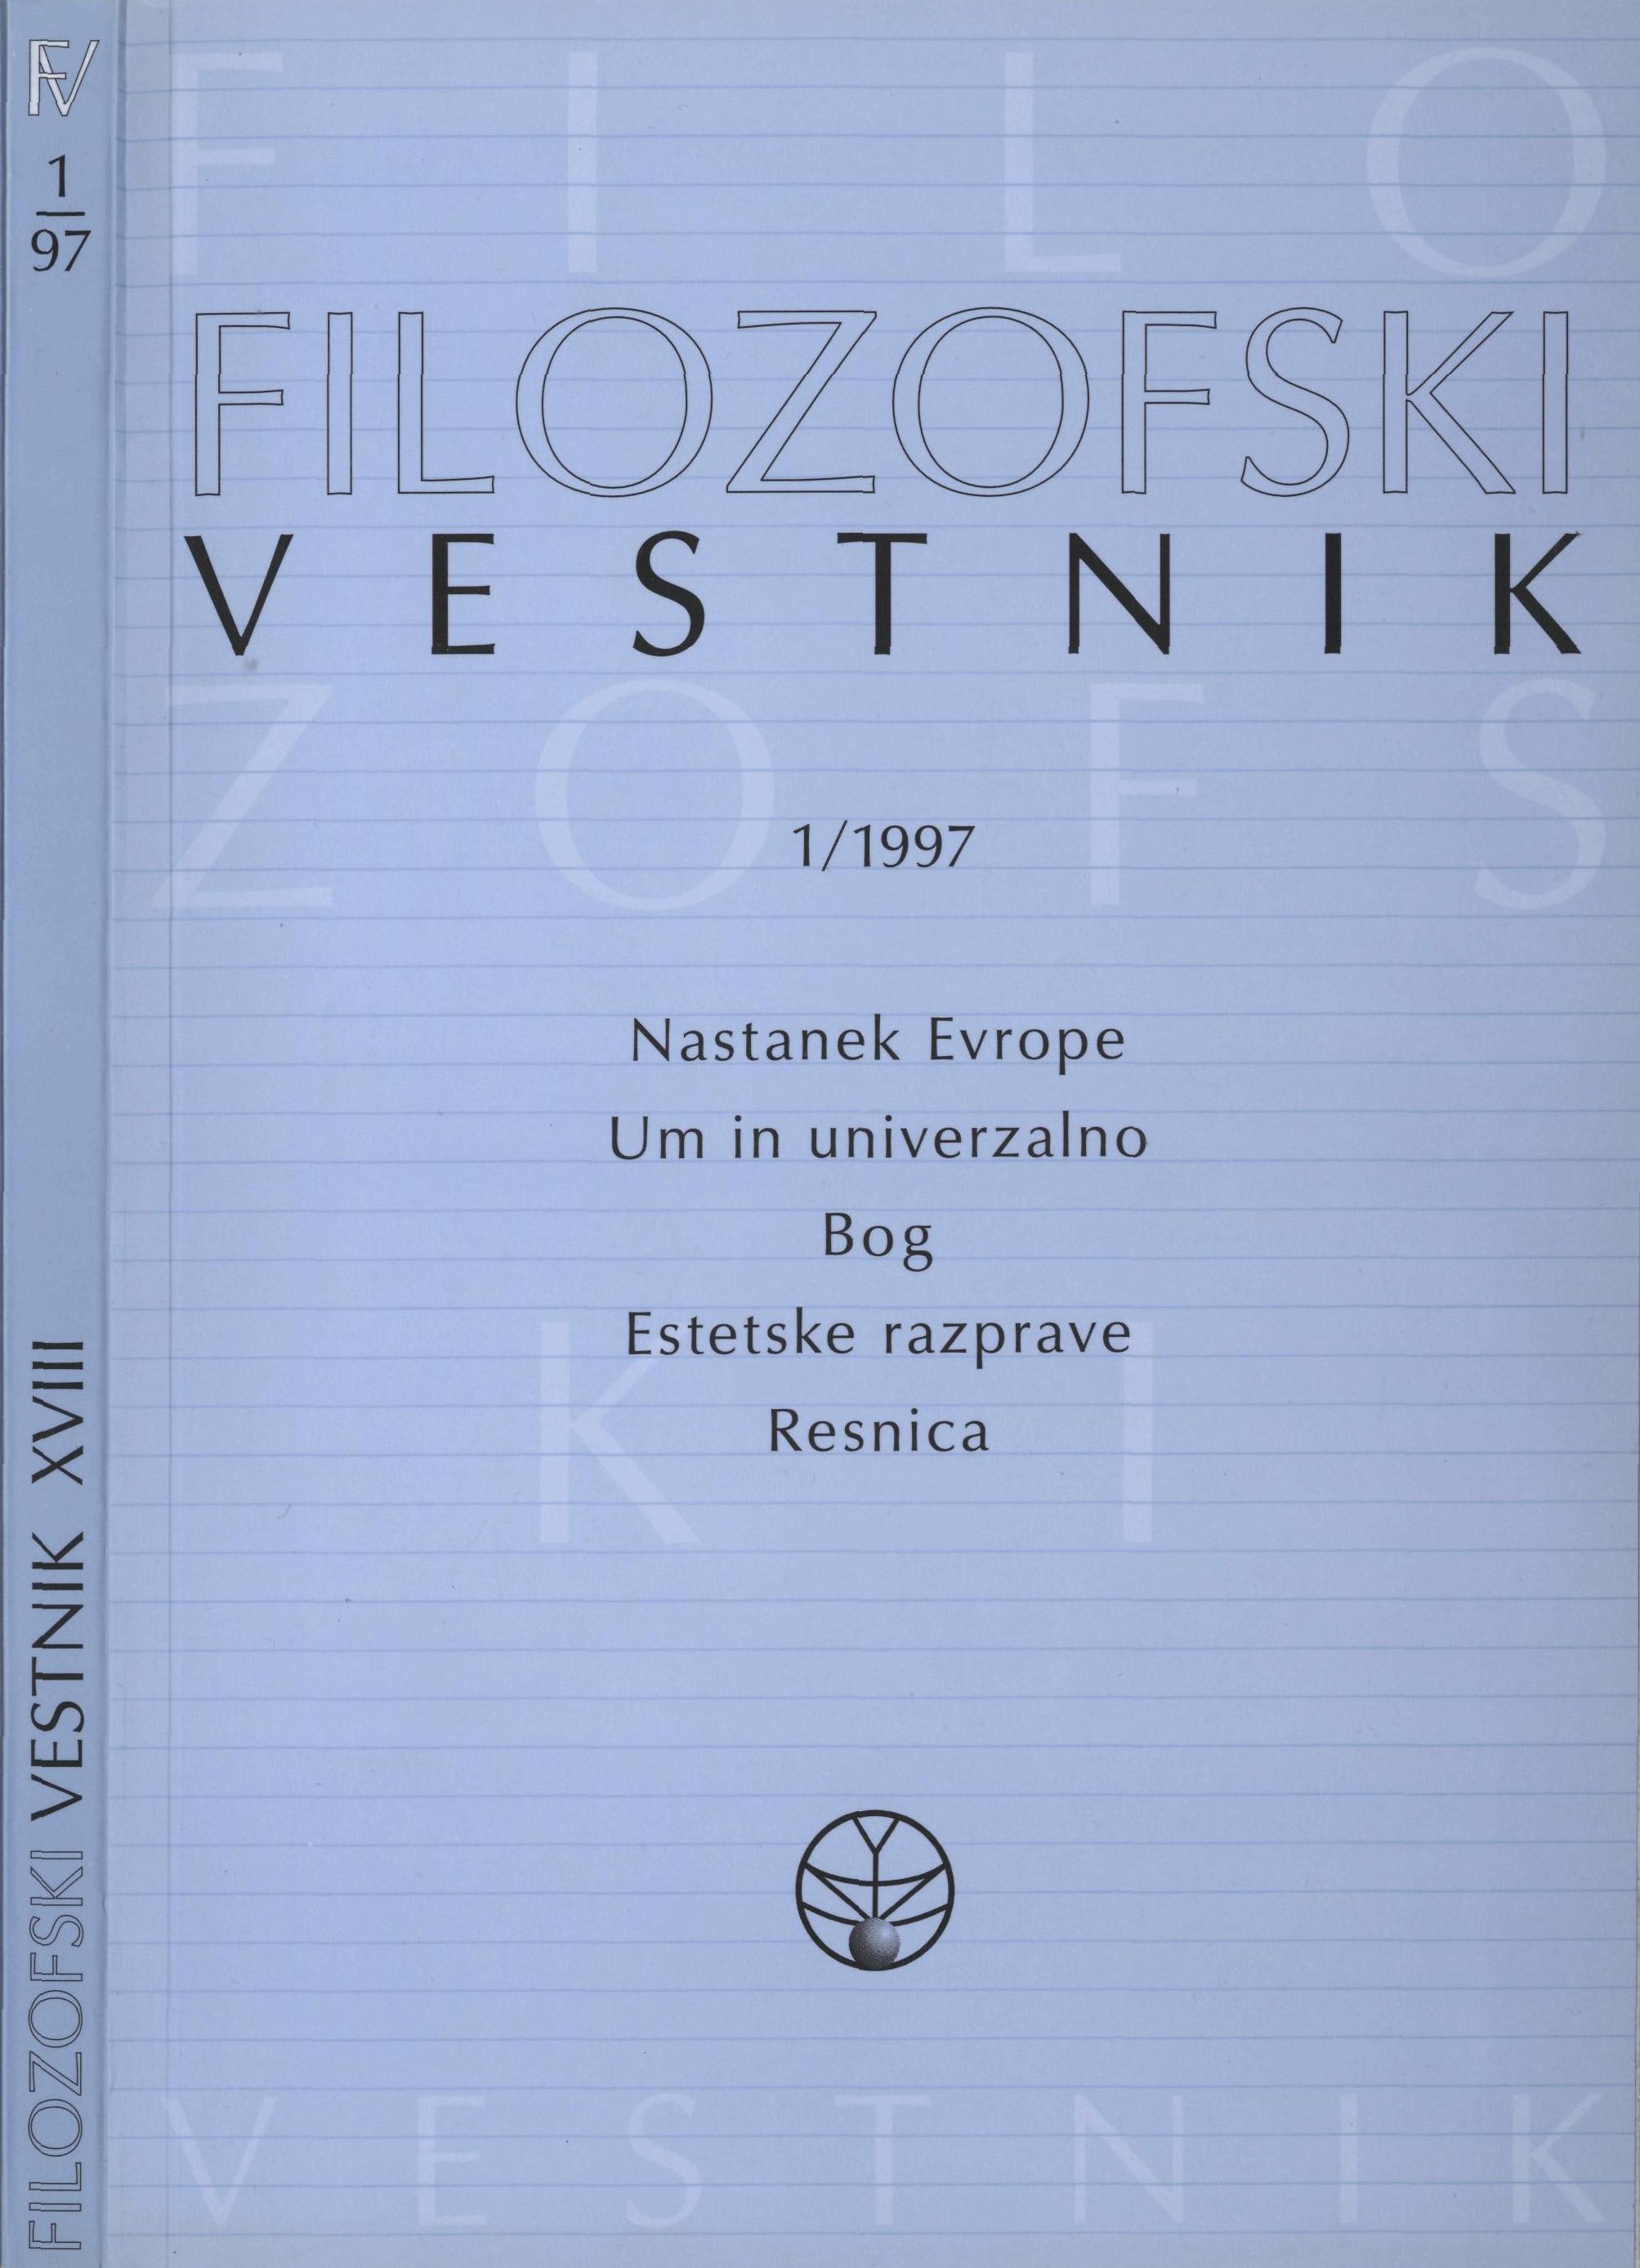 					View Vol. 18 No. 1 (1997): Nastanek Evrope, Um in univerzalno, Bog, Estetske razprave, Resnica
				